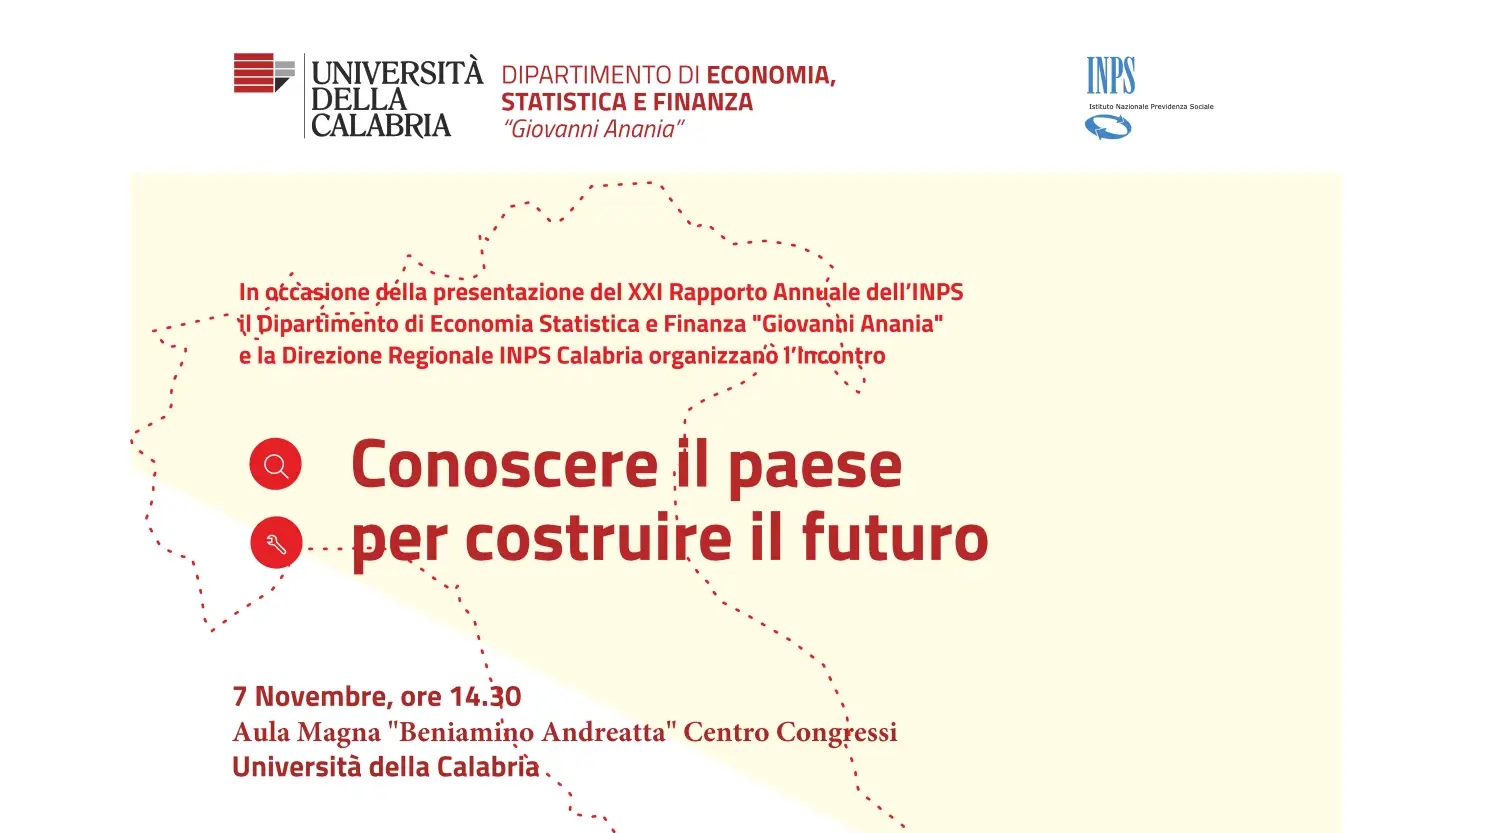 Conoscere il paese per costruire il futuro - 7 Novembre, ore 14.30 - Aula Magna "Beniamino Andreatta" Centro Congressi - Università della Calabria